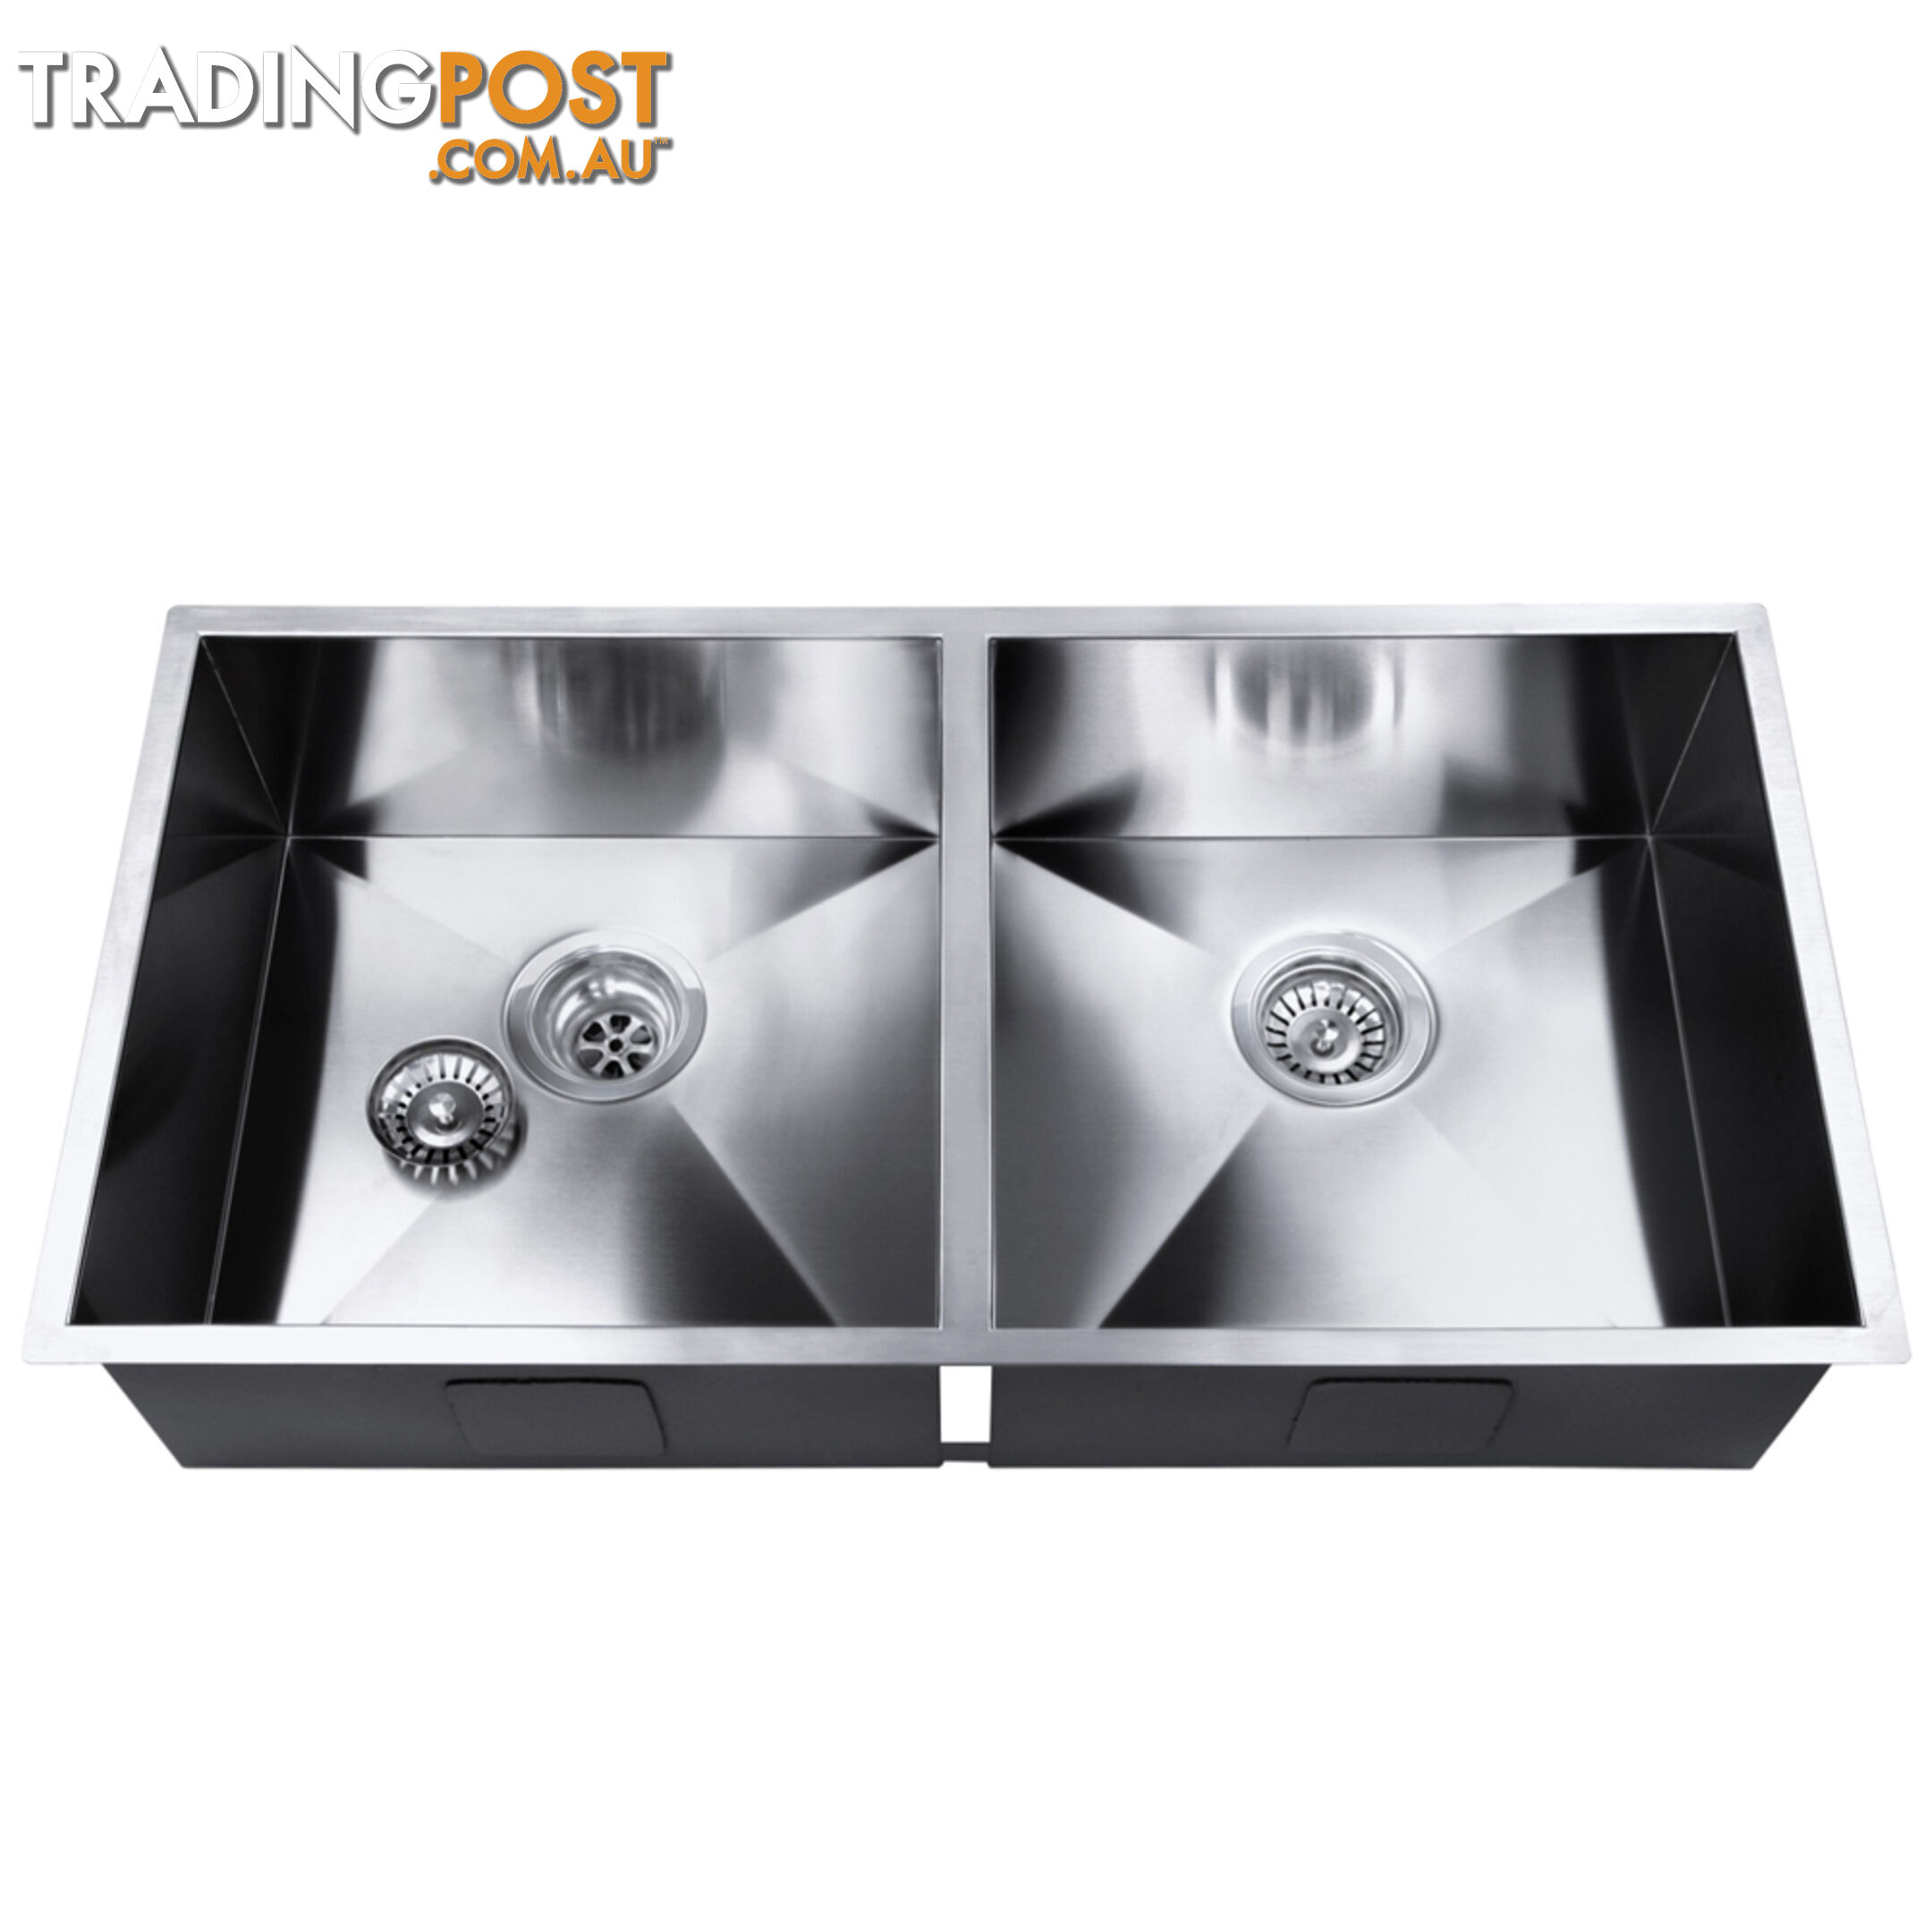 Handmade Stainless Steel Kitchen Laundry Sink Strainer Waste 865x440mm